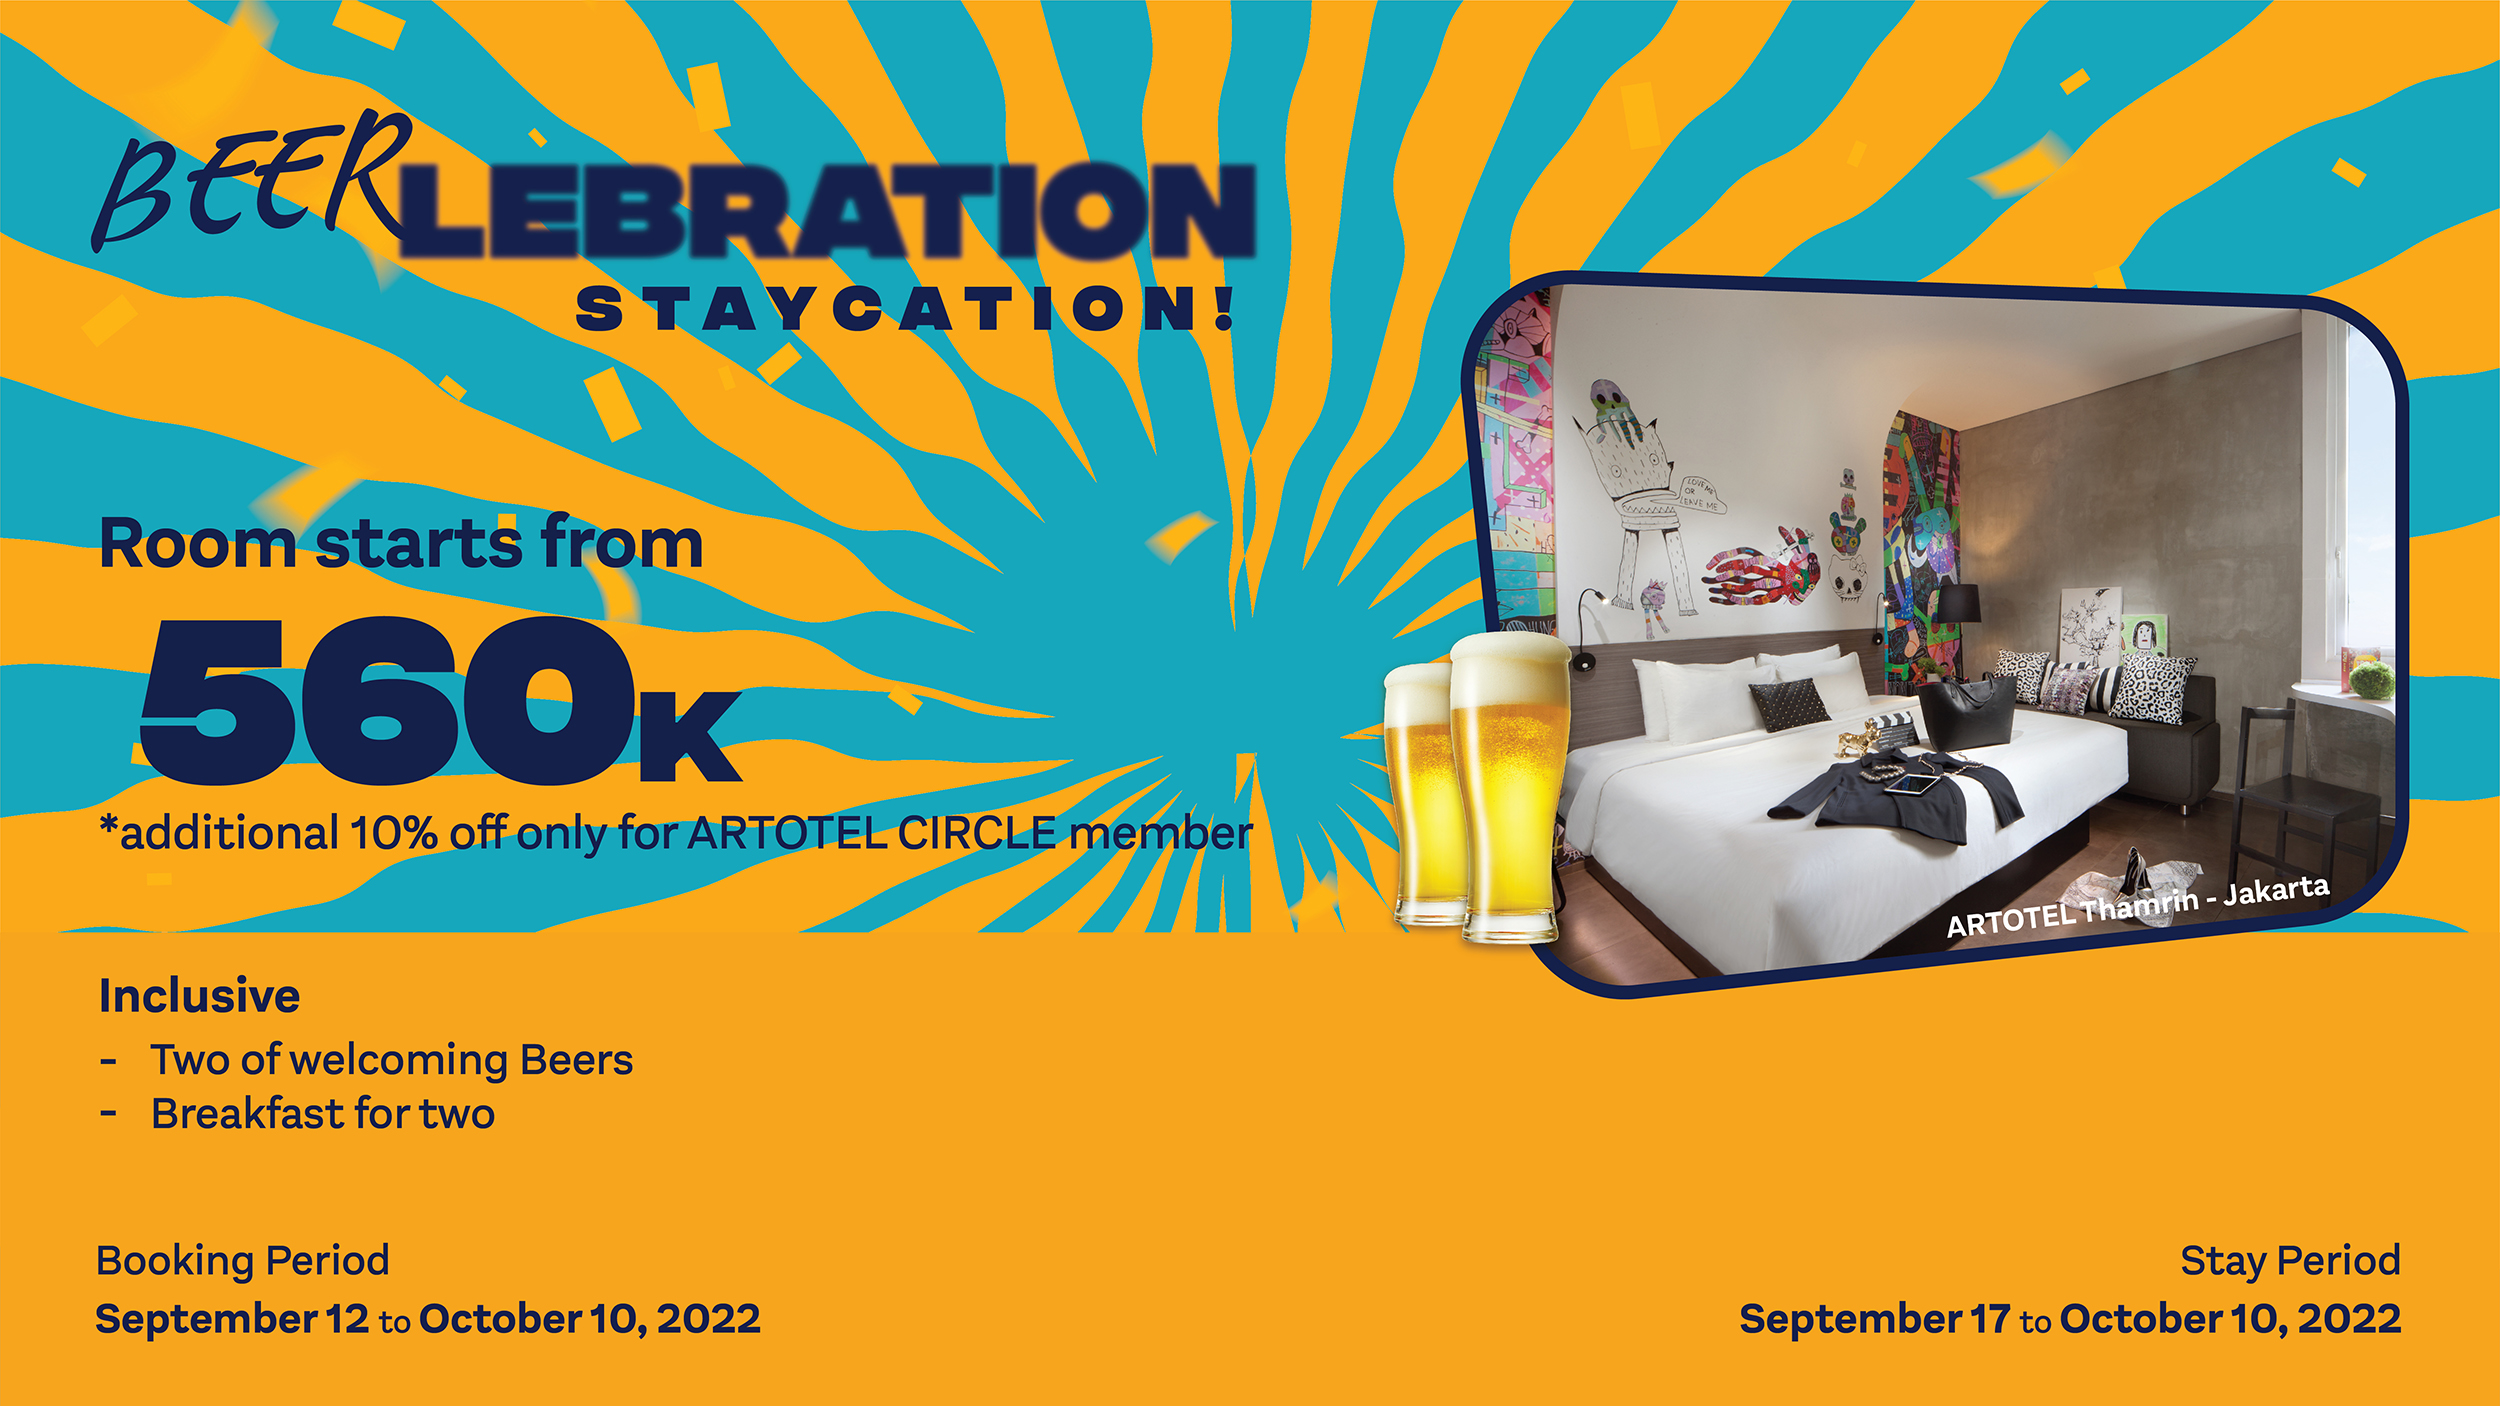 Beerlaberation Staycation_Development